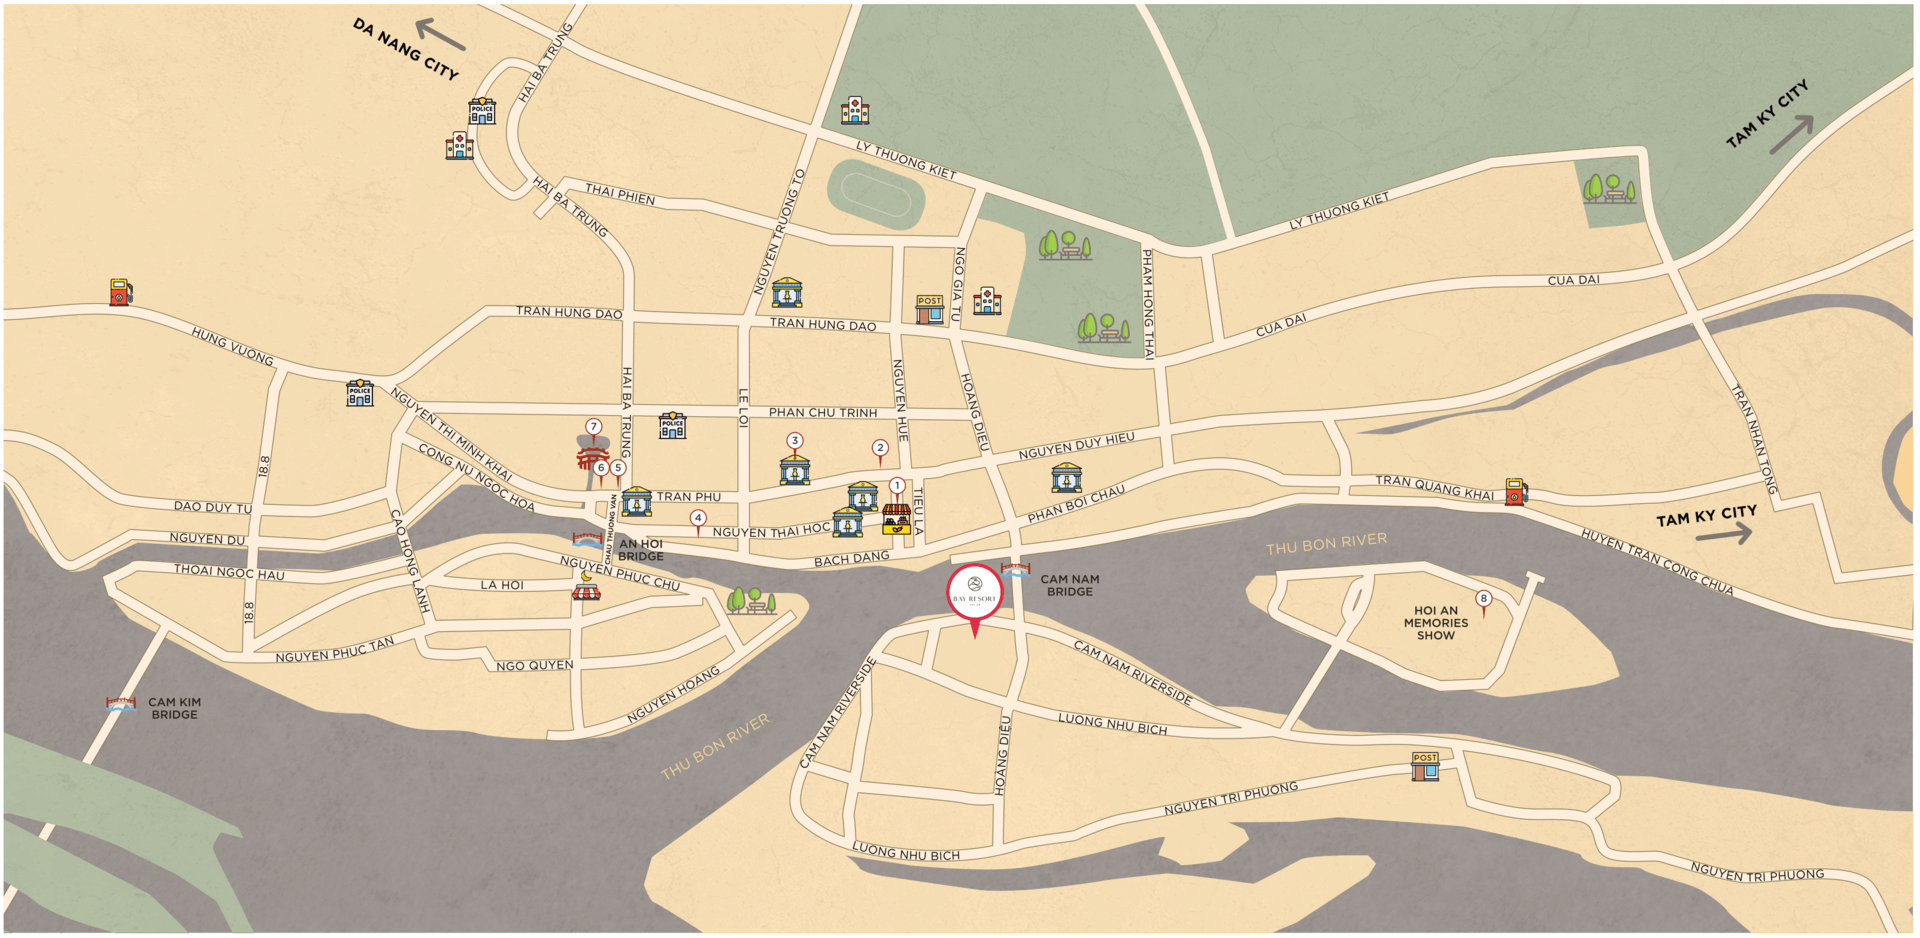 Hoi An City Map | Bay Resort Hoi An